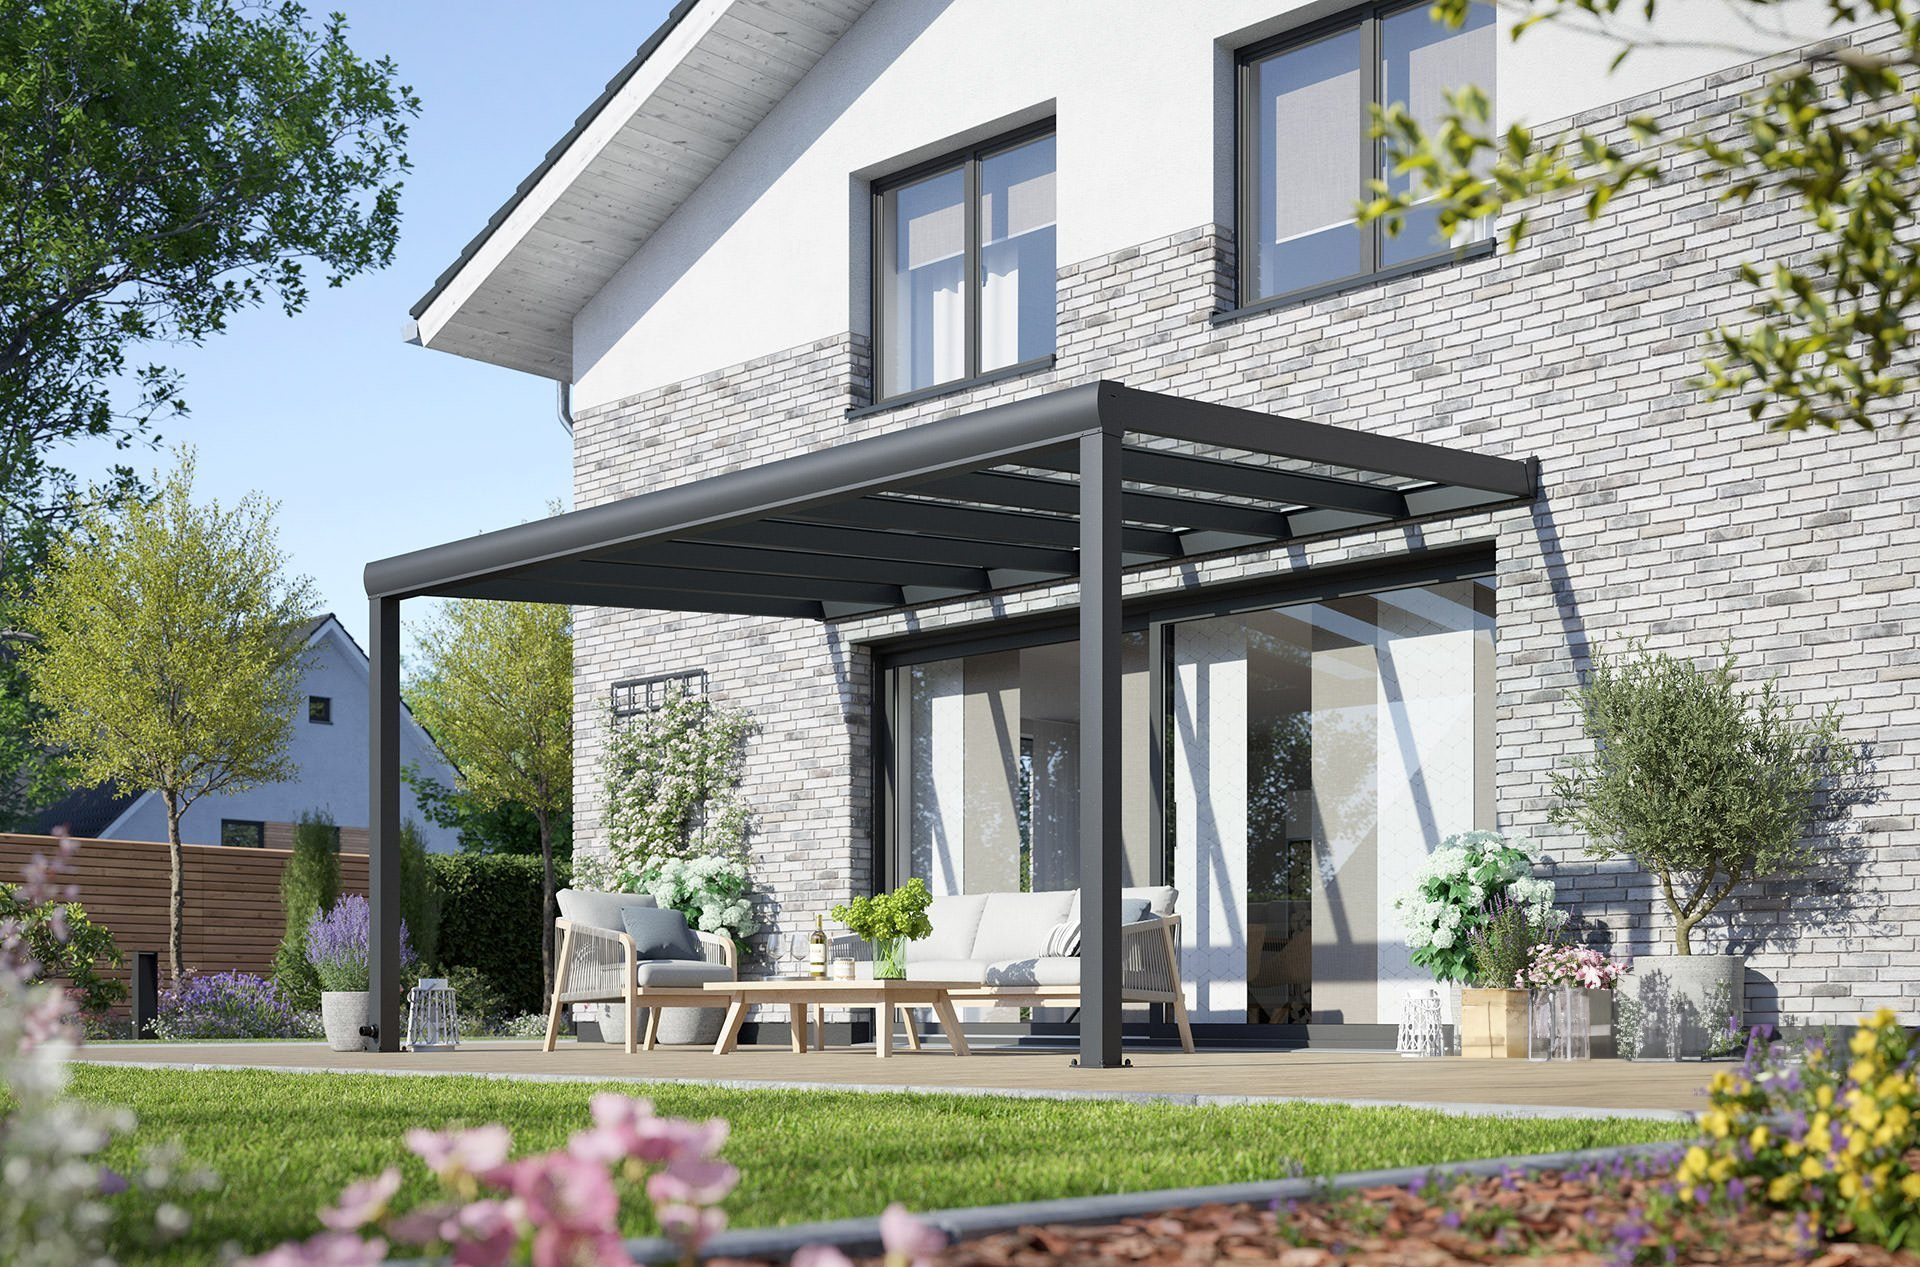 Rexin Terrassendach REXOpremium – hochwertiges Aluminium Terrassendach 4m x 3m, BxT: 406x300 cm, Bedachung VSG-Glas klar oder VSG-Glas grau, mit 4mm starken Profilen, Terrassenüberdachung, Vordach